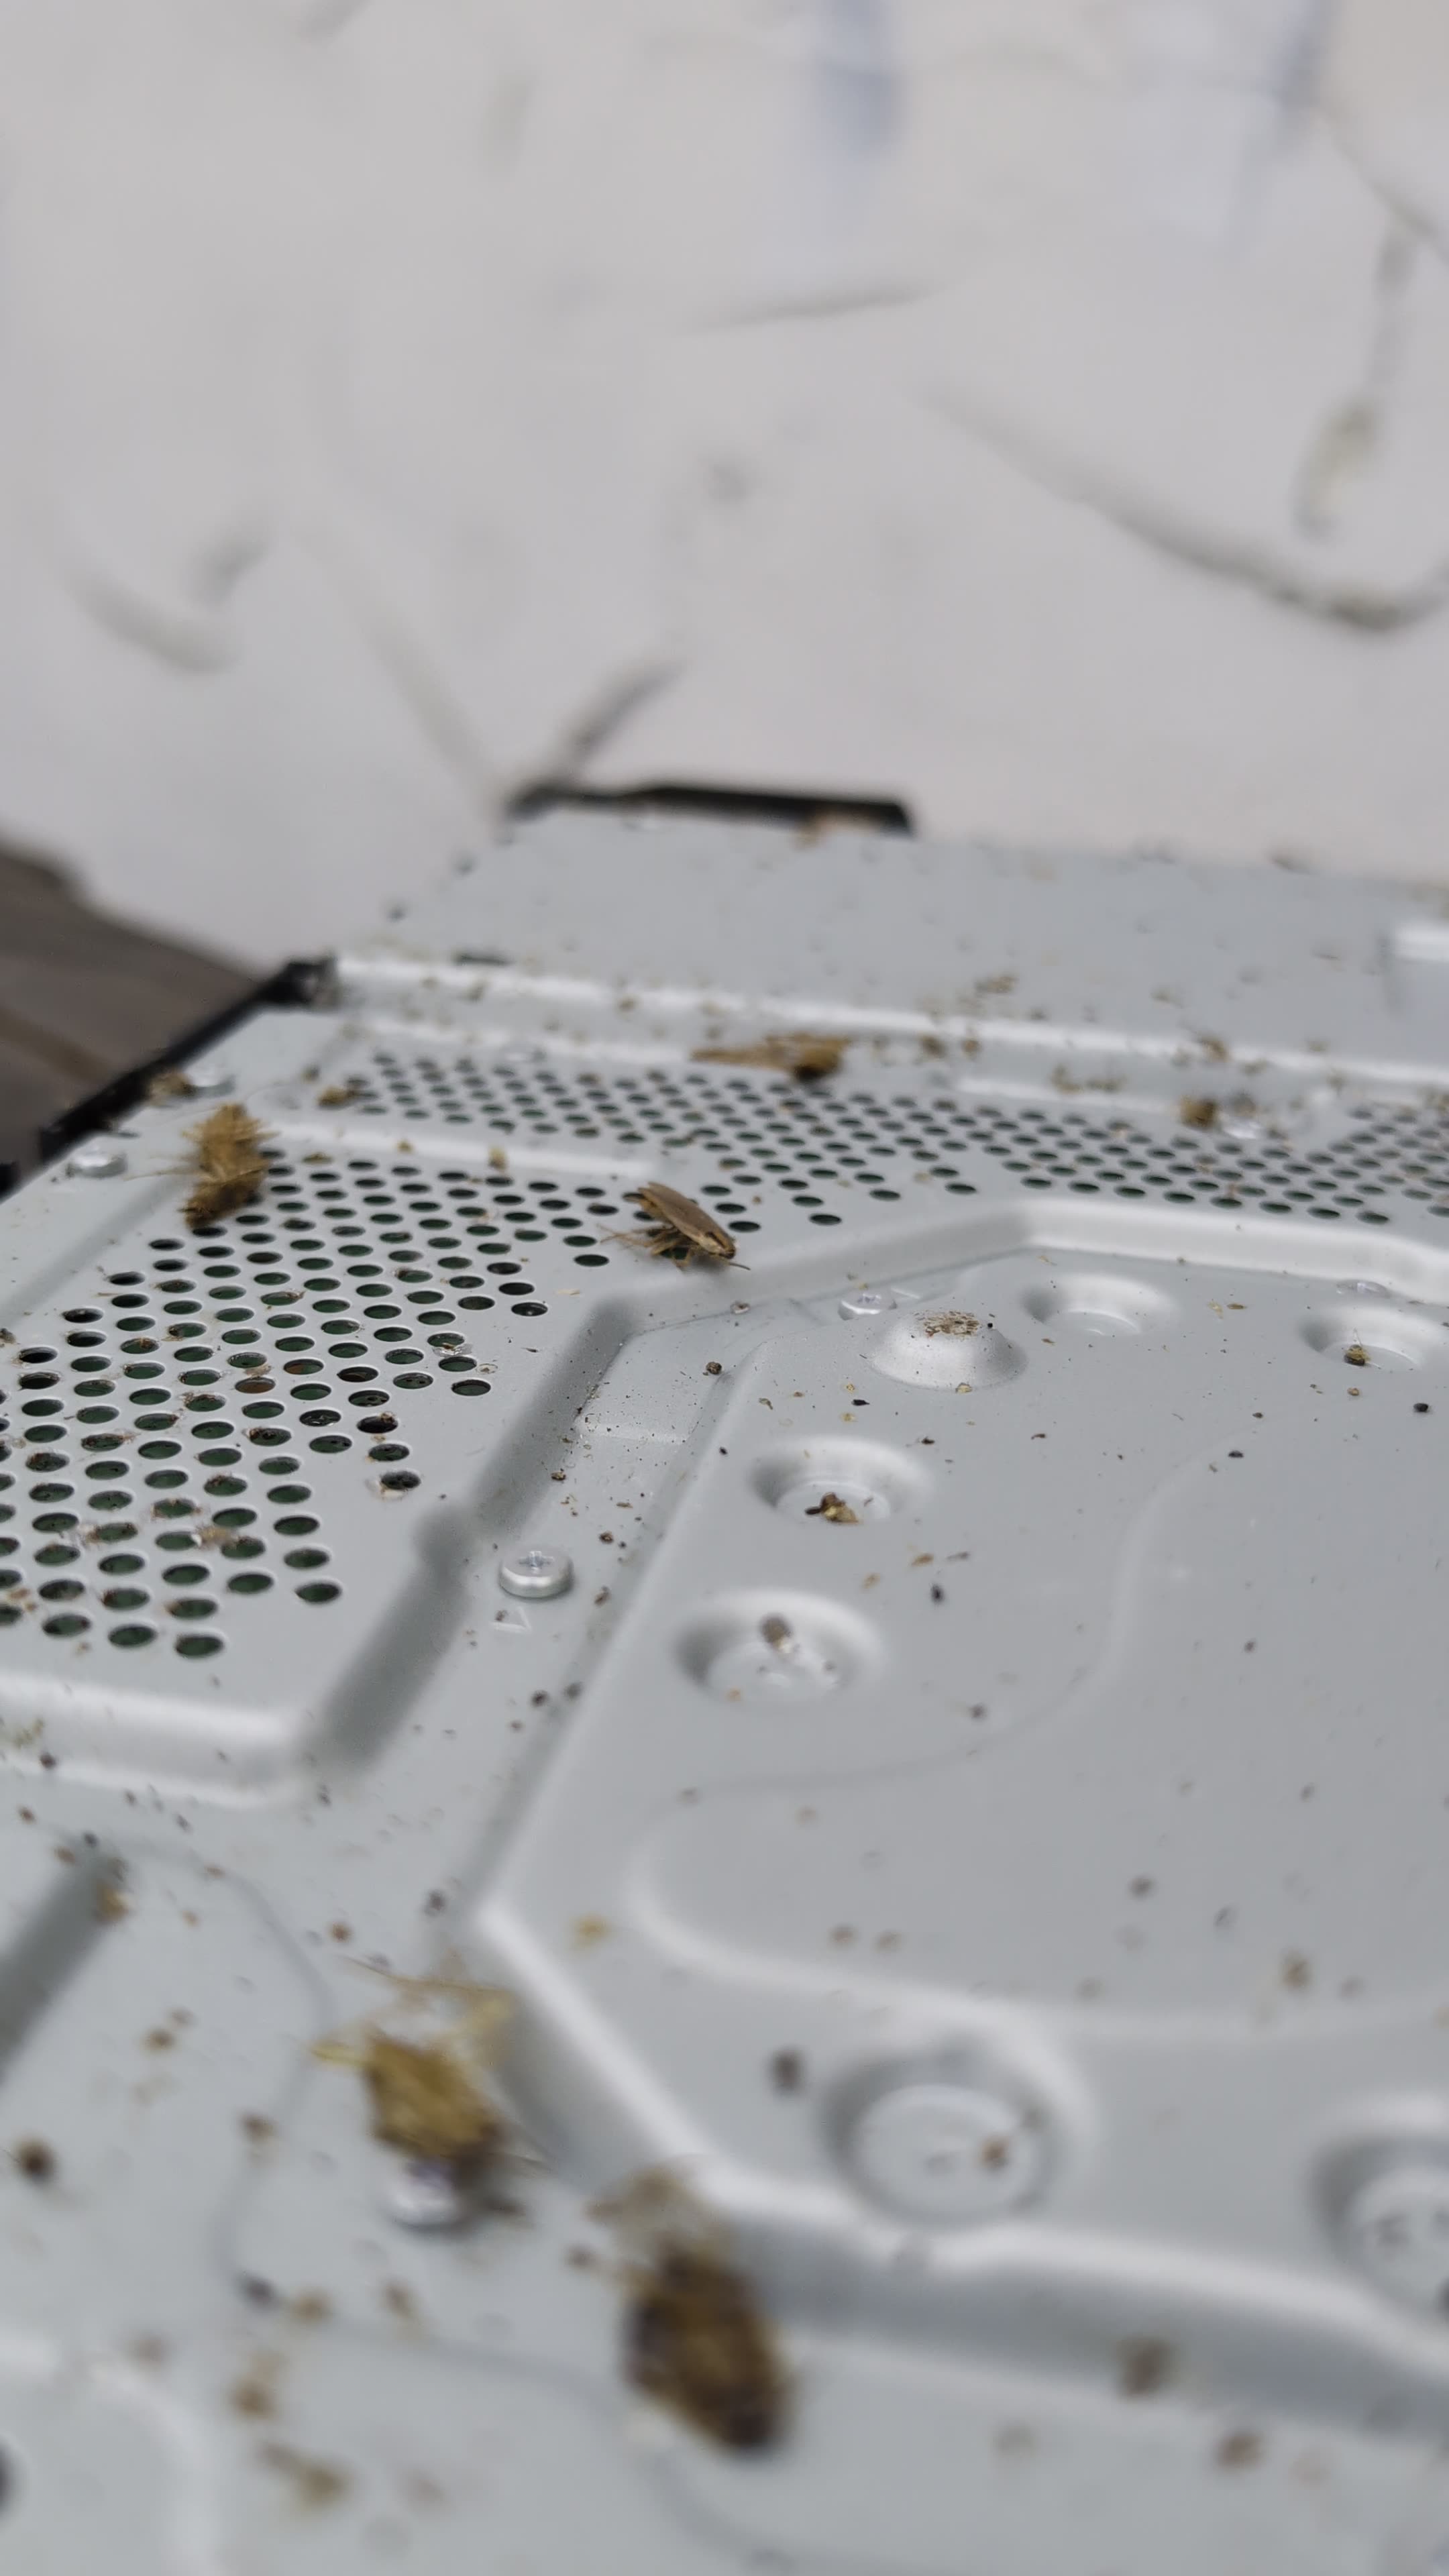 PS4 Roaches Blown Away!